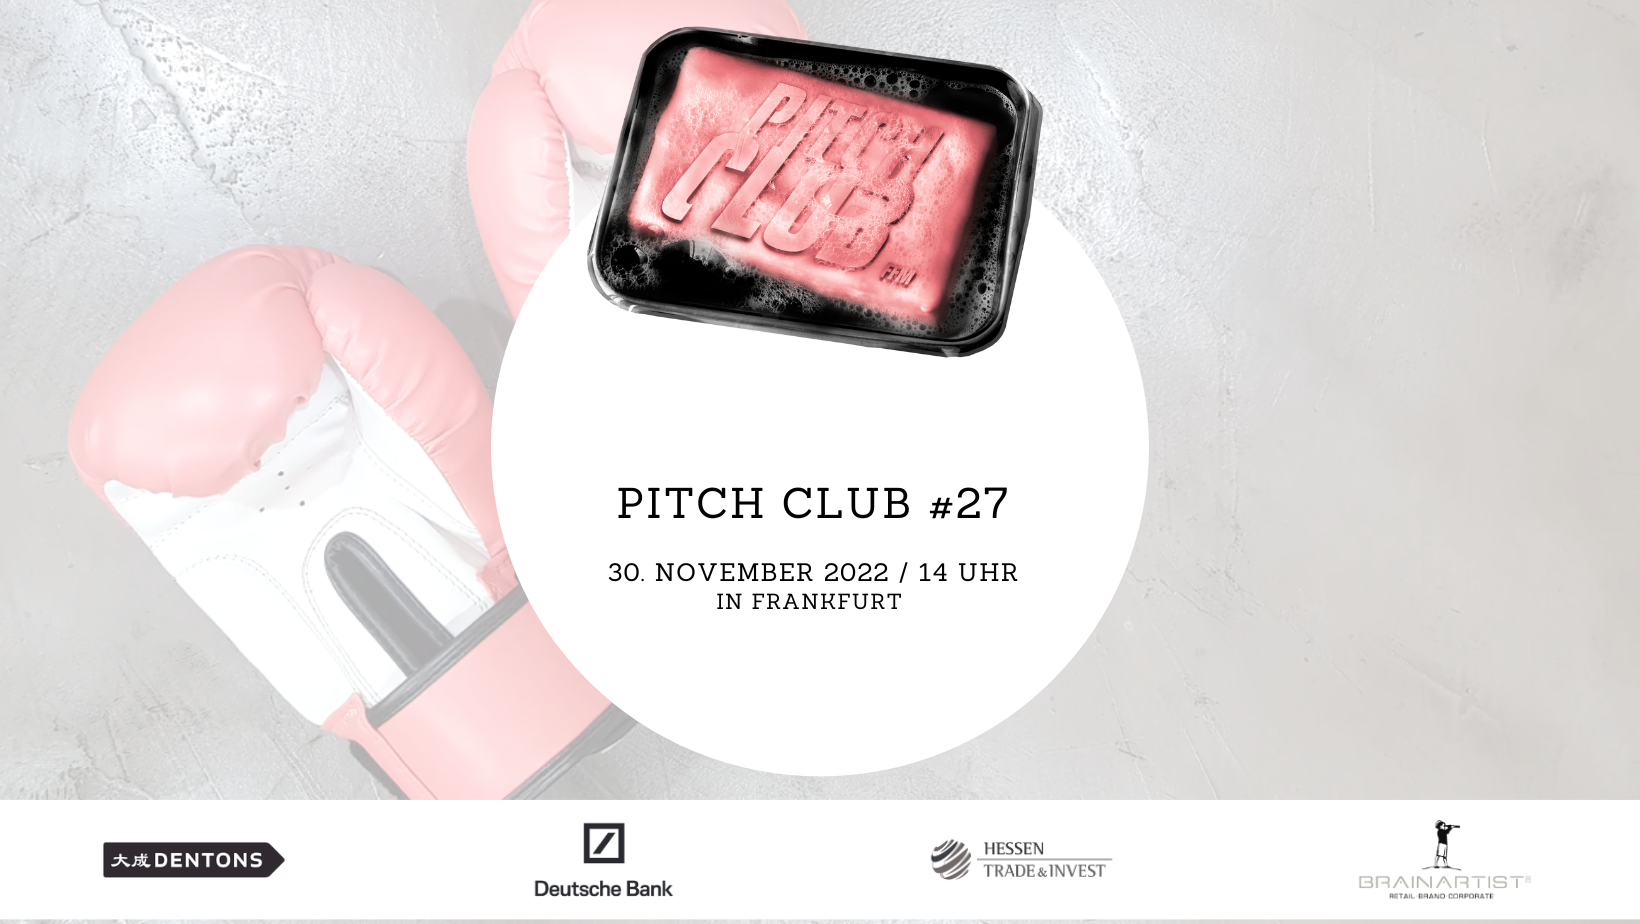 Pitch Club #27